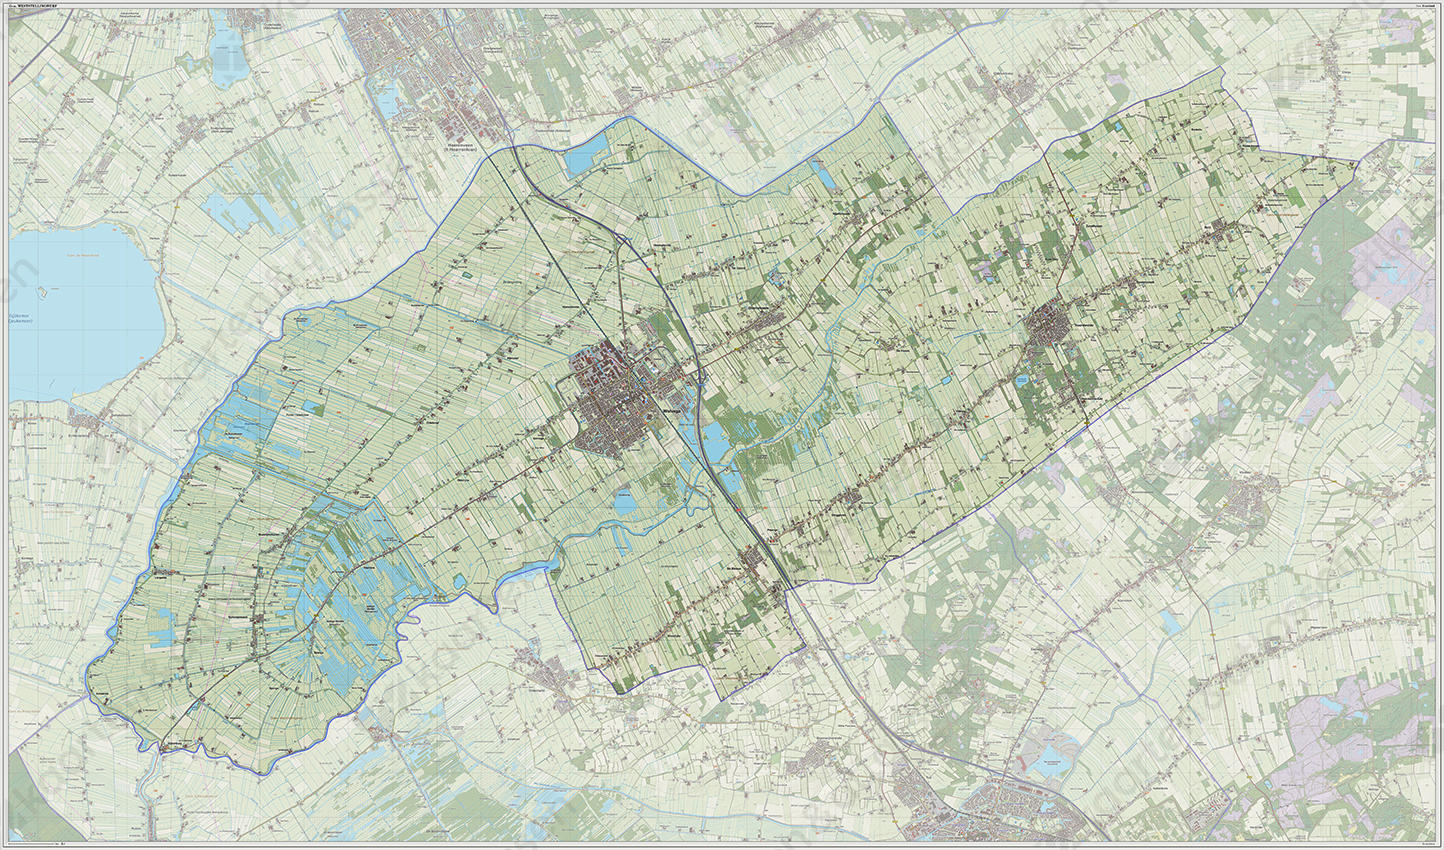 Digitale kaart Weststellingwerf 1222